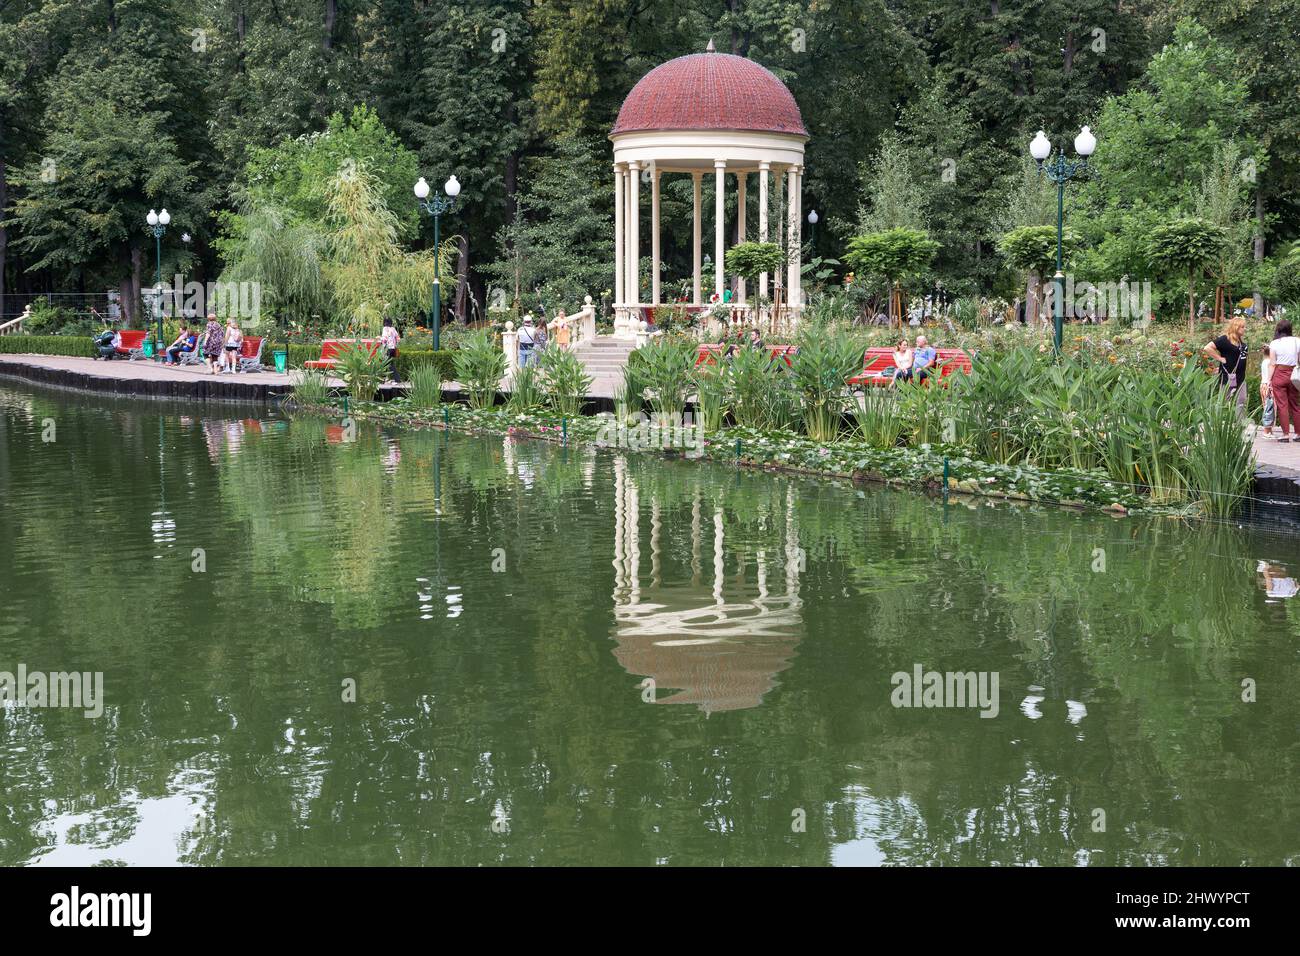 KHARKIV, UKRAINE - 3 AOÛT 2021 : il s'agit d'un belvédère au-dessus d'un étang artificiel dans le parc central de la culture et des loisirs. Banque D'Images